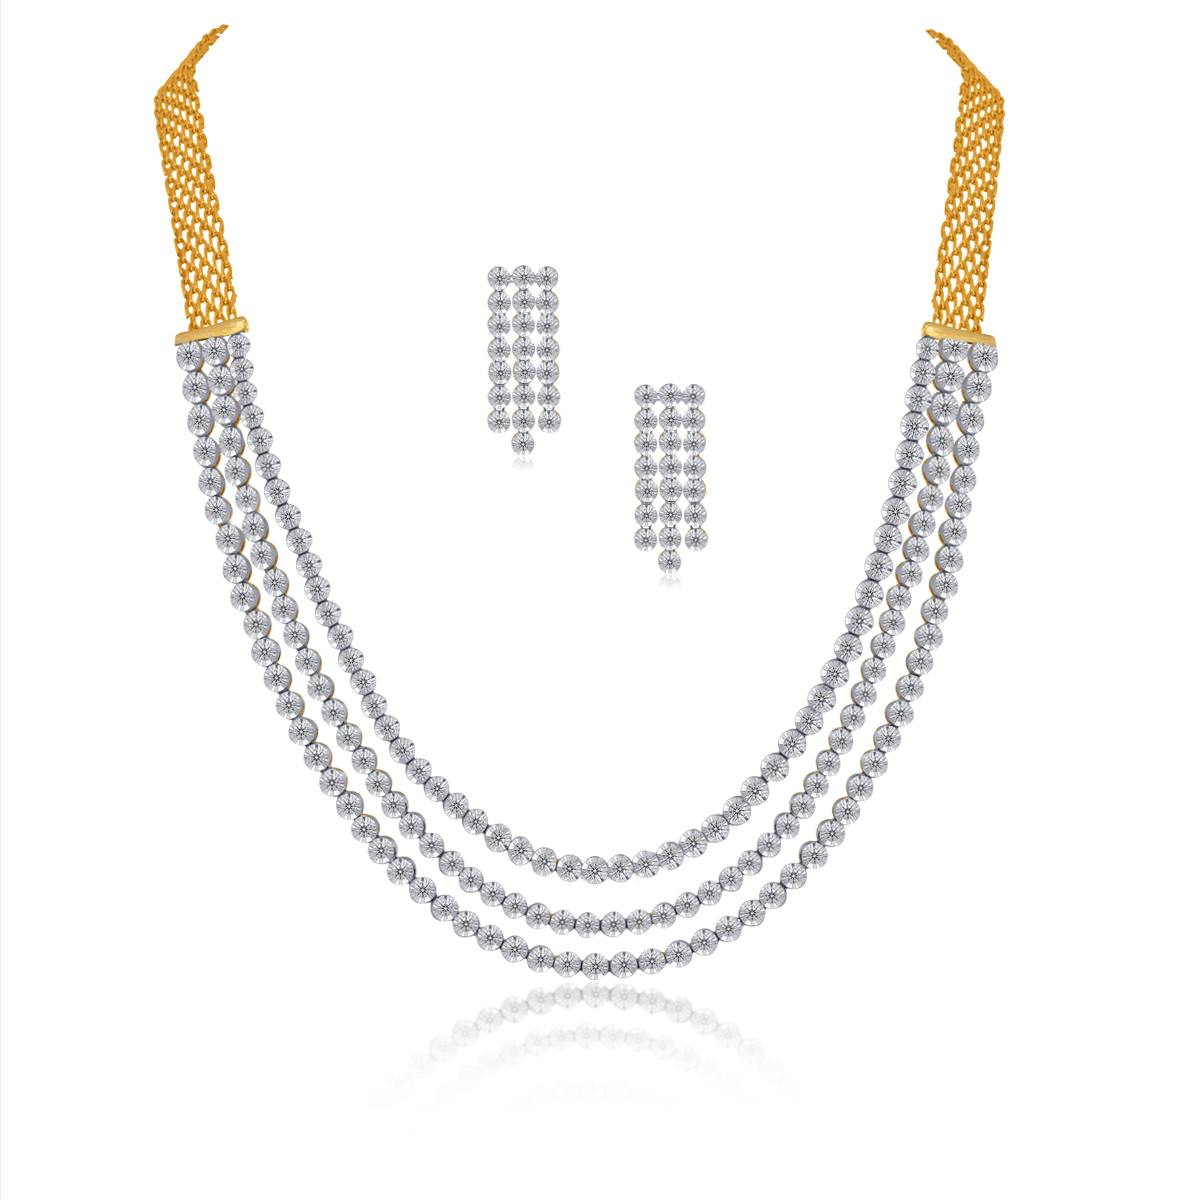 Keira diamond necklace